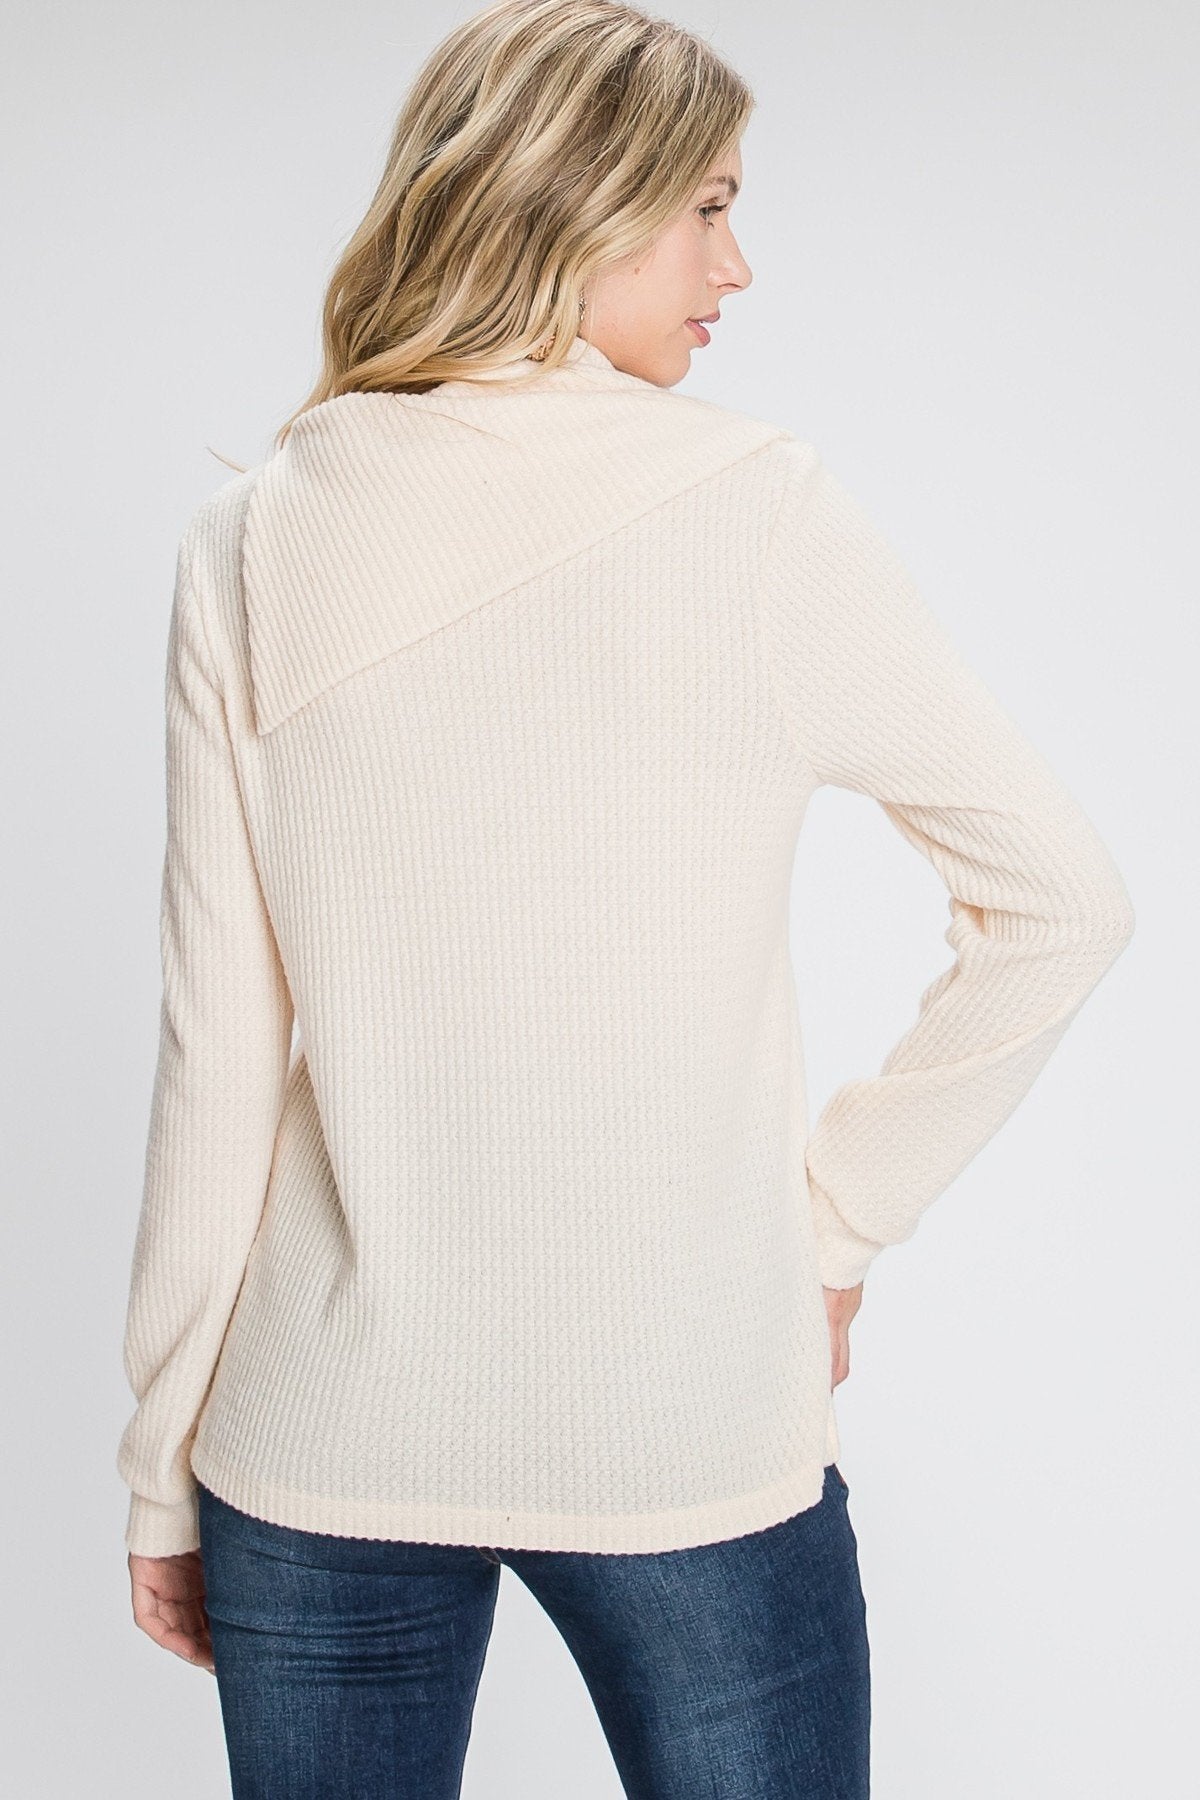 Women's Buttoned Flap Mock Sweater